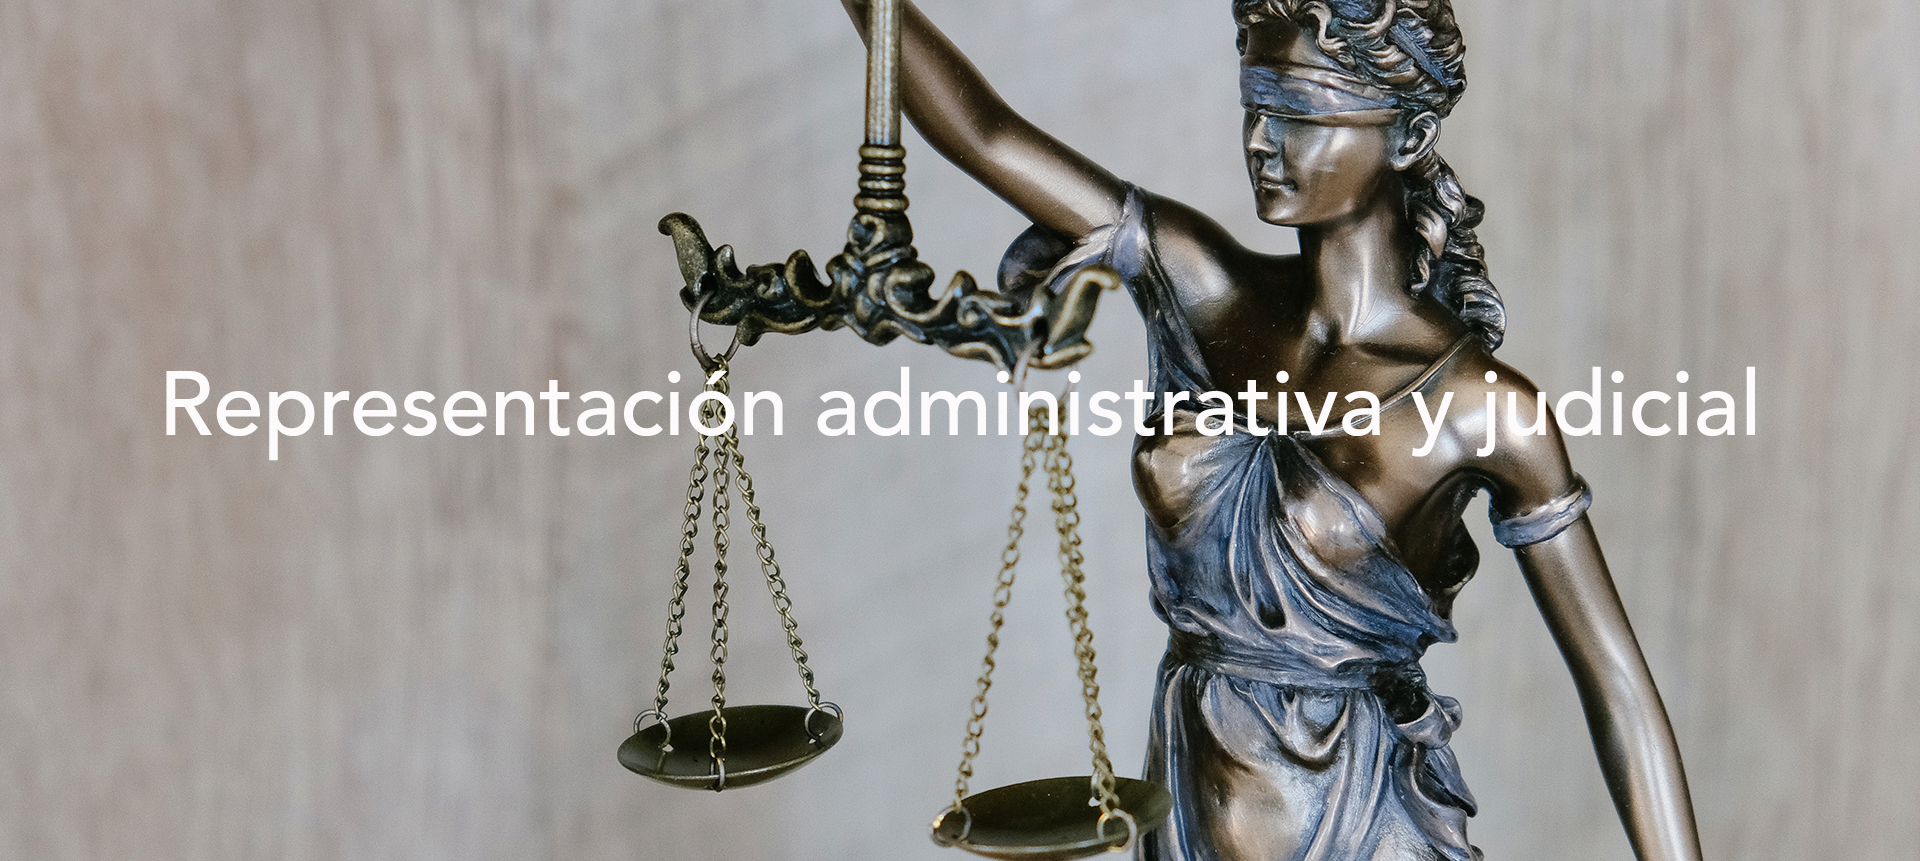 Representación administrativa y judicial